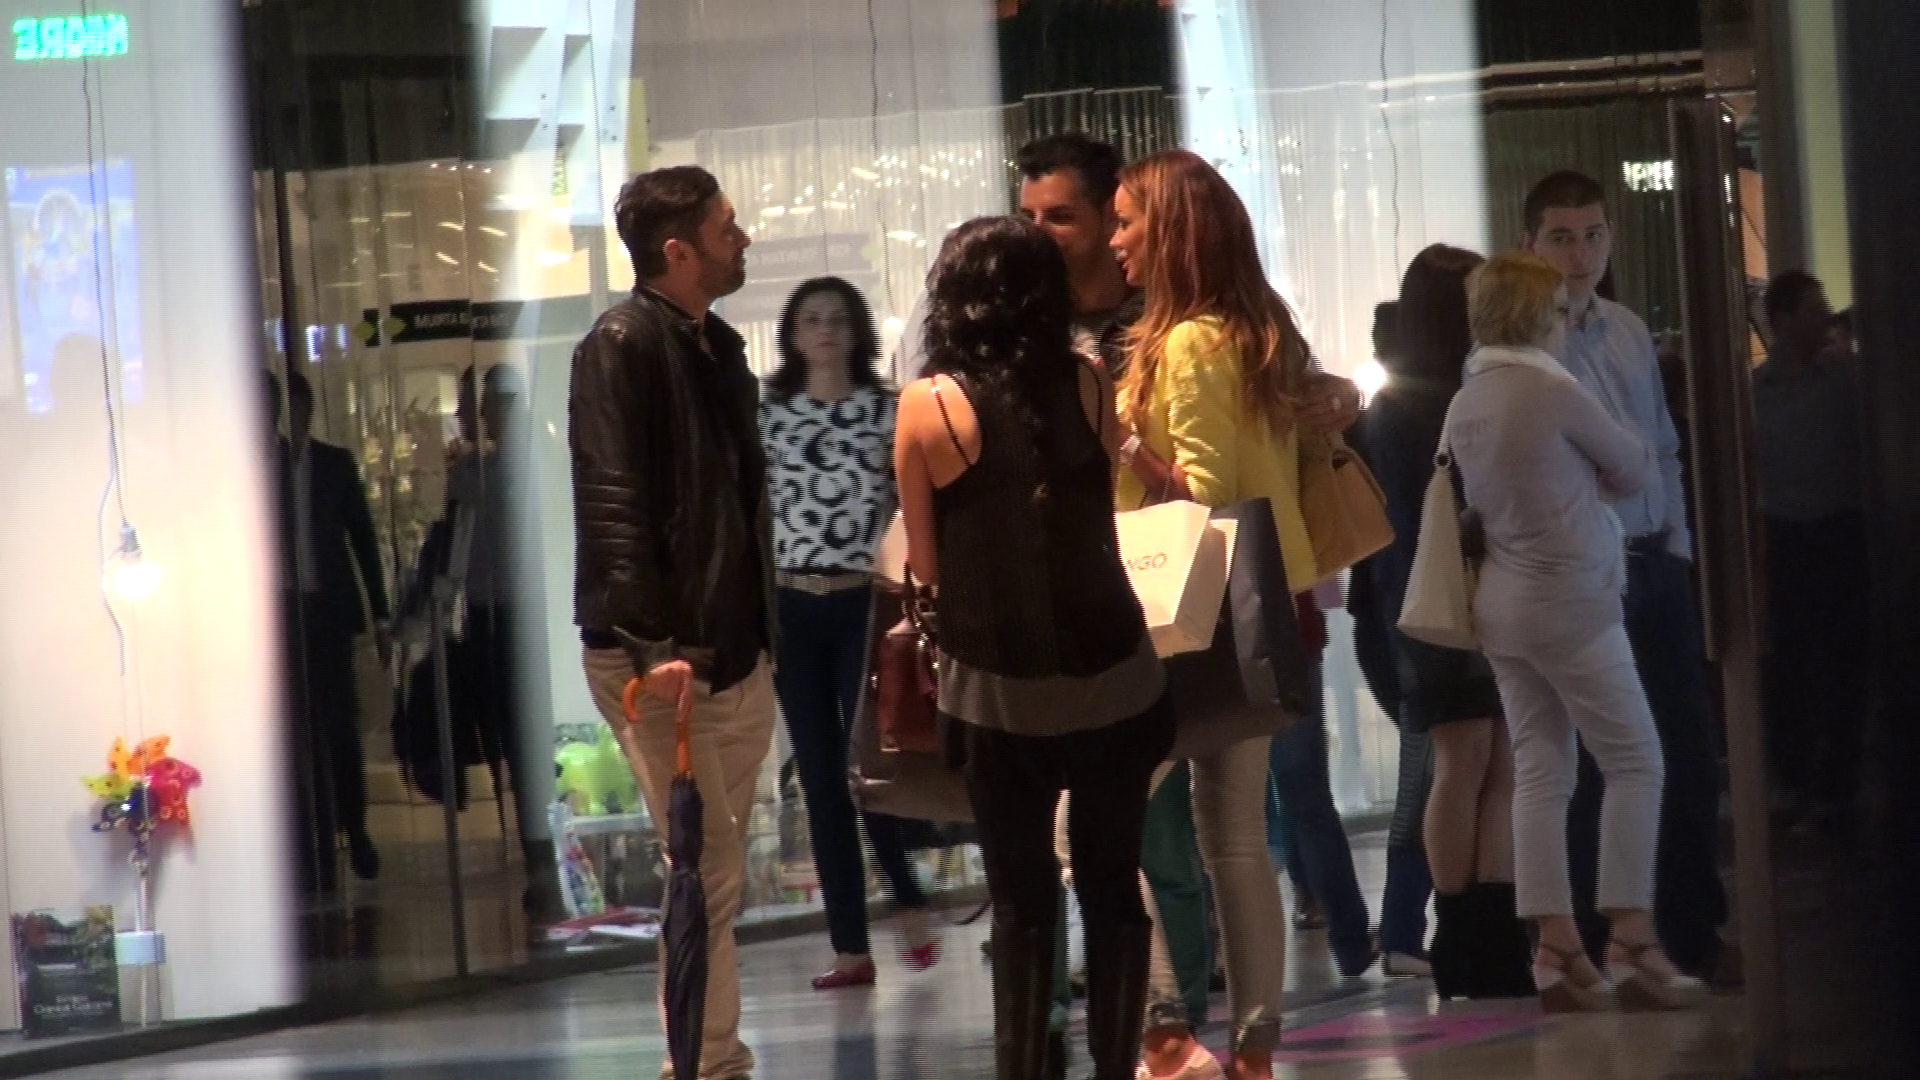 Dupa ce au cumparat biletele, fetele s-au intalnit cu niste cunoscuti, in mall